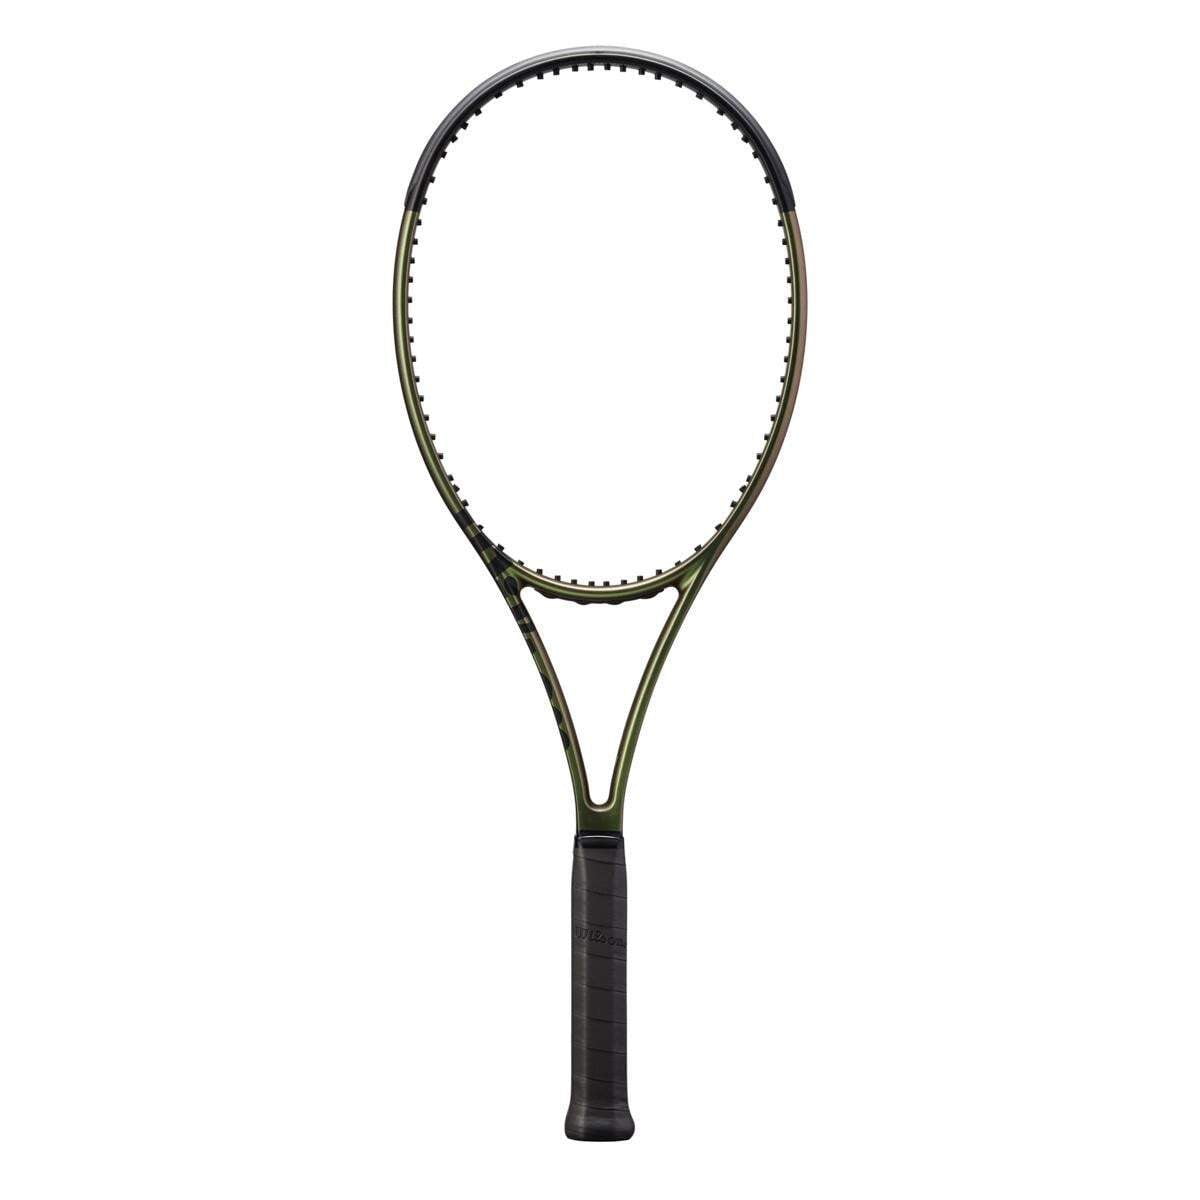 Wilson Blade 98 16x19 V8 Tennis Racquet 2021 - Tennis Racquet - Wilson - ATR Sports